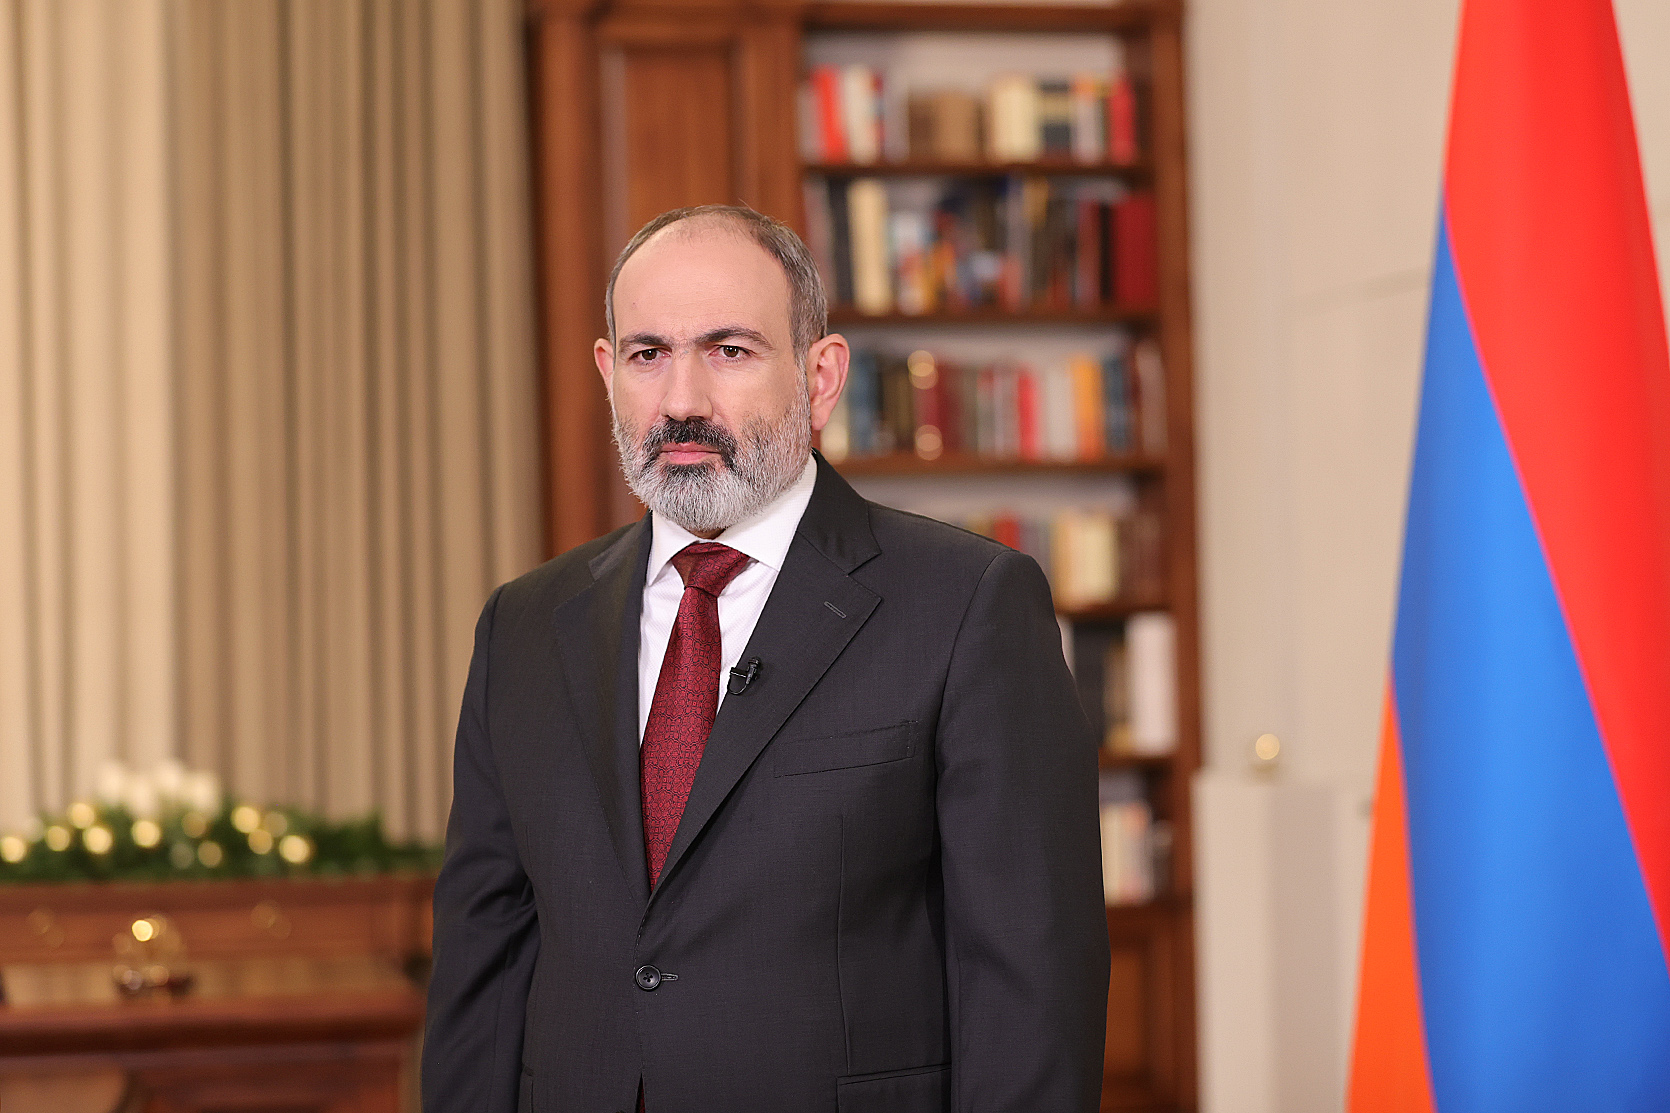 Վարչապետը շնորհավորական ուղերձ է հղել Հայաստանի քրդական համայնքի ներկայացուցիչներին Նավրոզի առթիվ